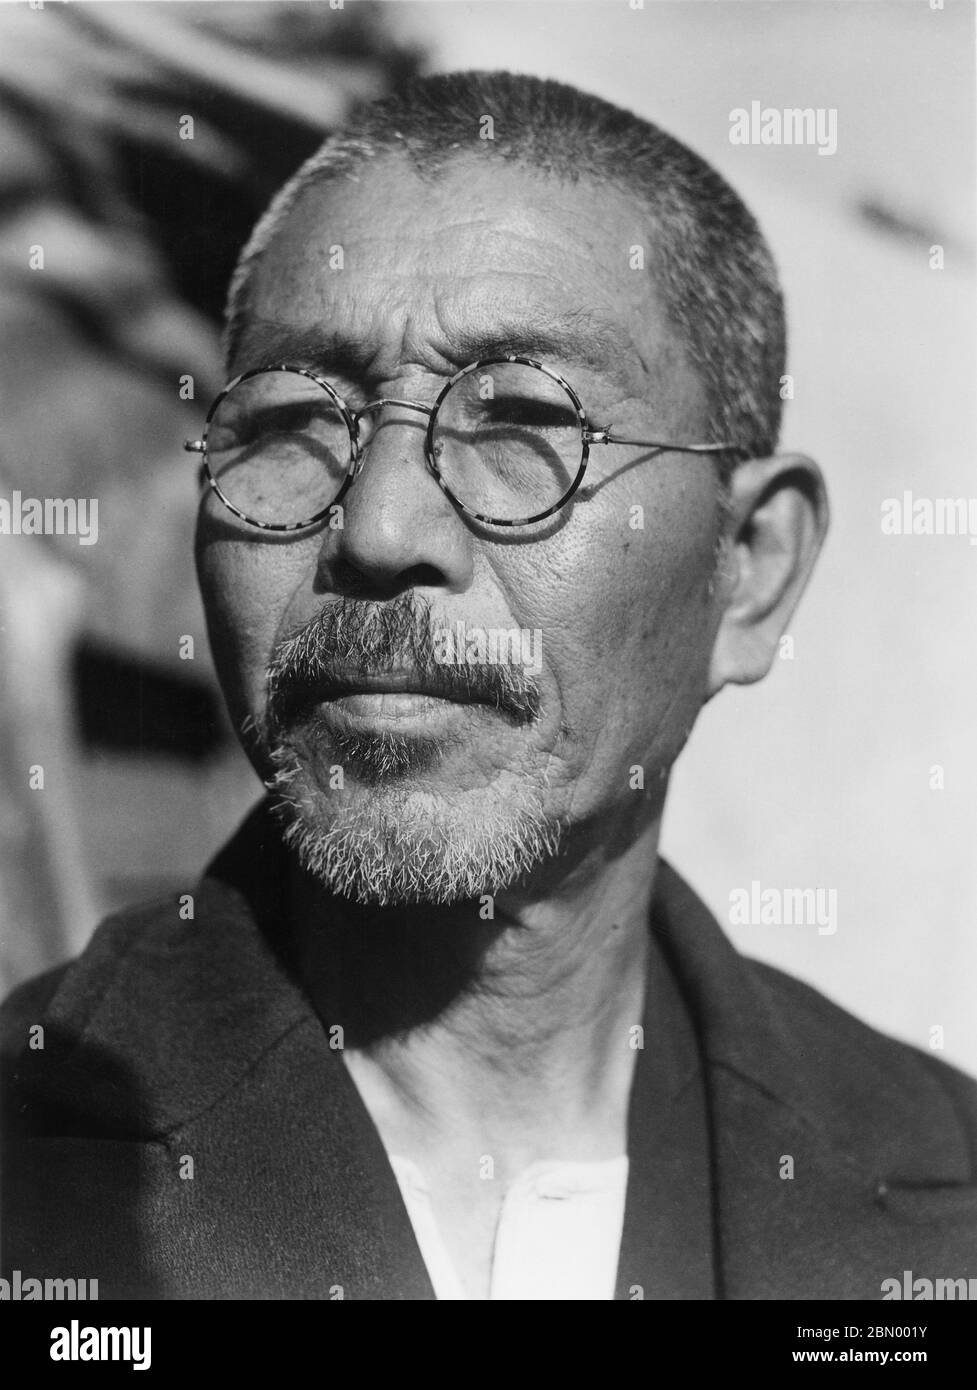 [ 1946 Japon - Homme d'Okinawa ] — gros plan d'un homme d'Okinawa portant des lunettes, 1946 (Showa 21). imprimé gélatine argent du xxe siècle. Banque D'Images